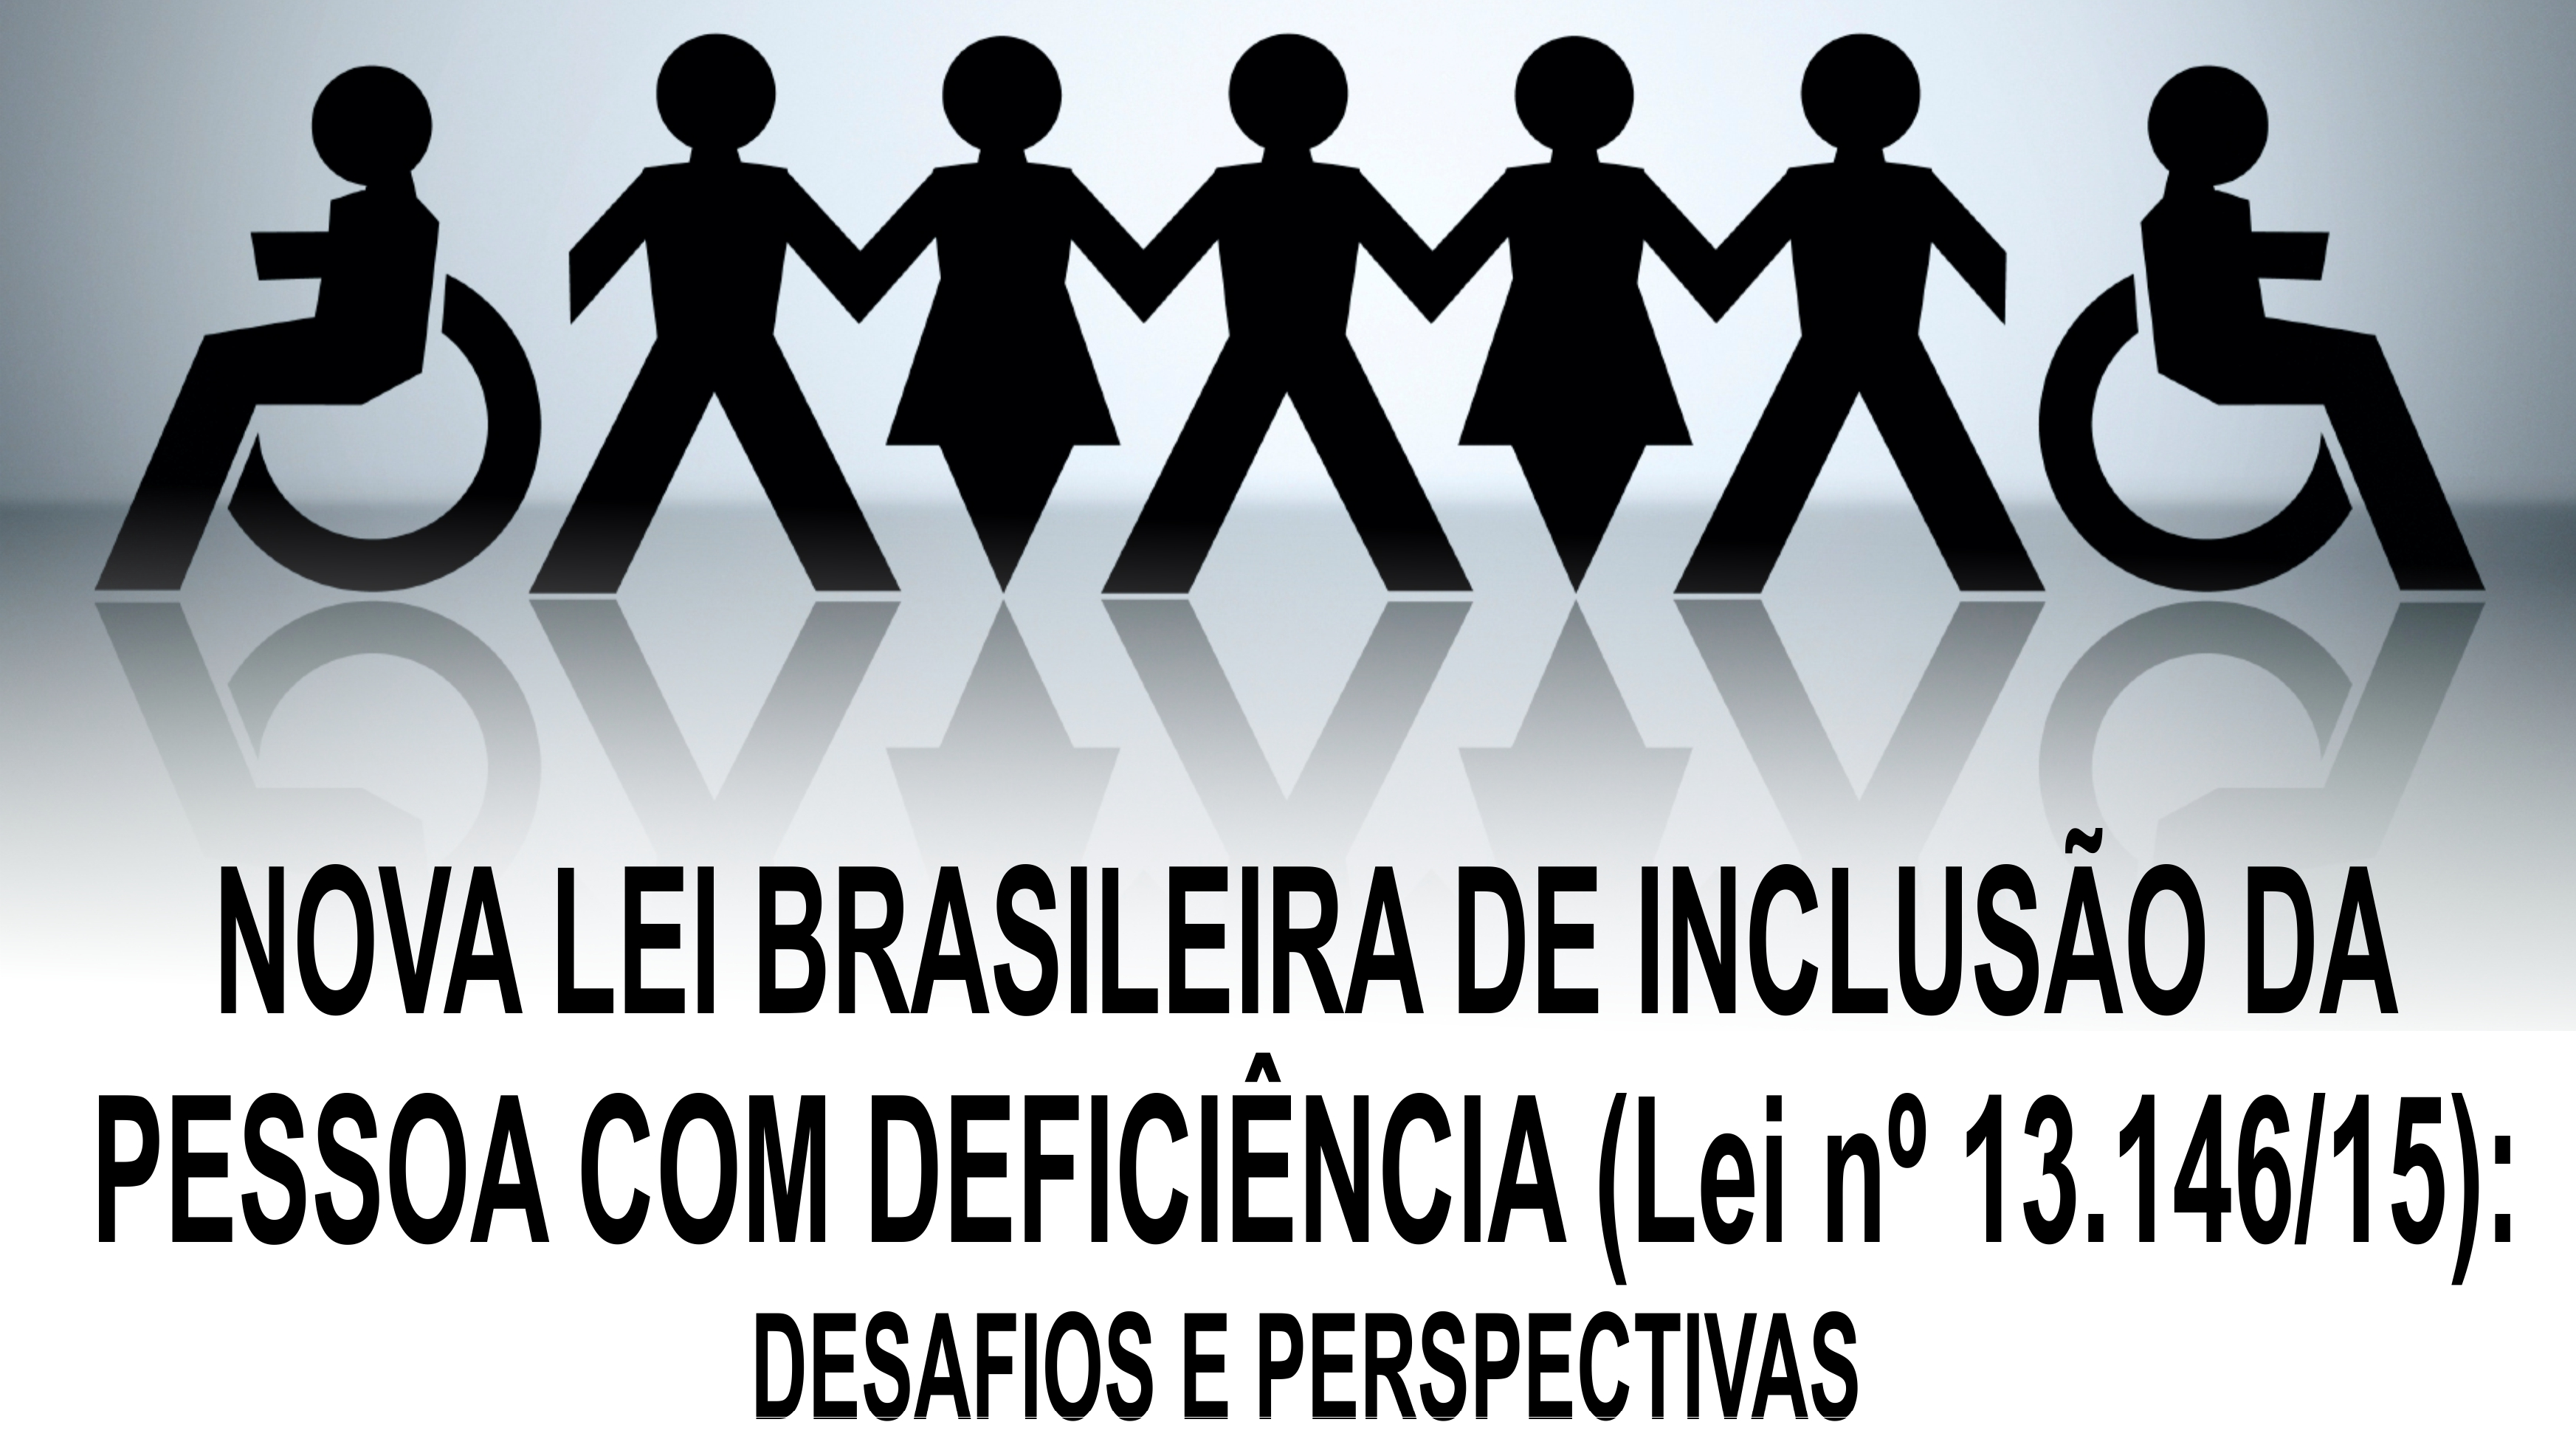 Palestra: Nova Lei de Inclusão da Pessoa com Deficiência - INSCRIÇÕES ENCERRADAS